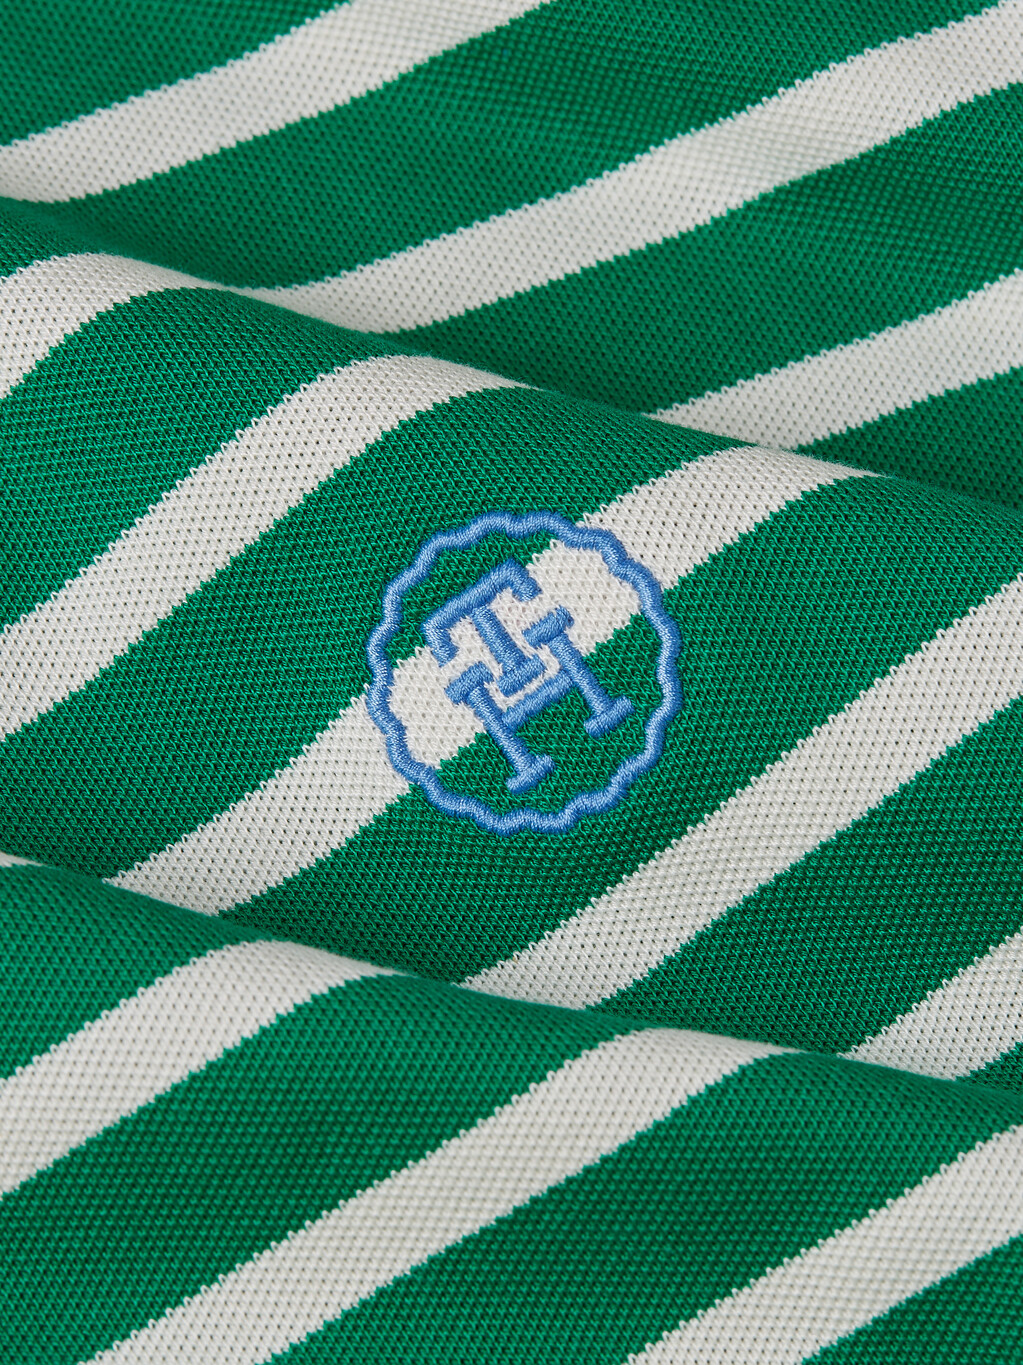 寬鬆萊賽爾條紋 Polo 衫, Breton Ecru/Olympic Green, hi-res